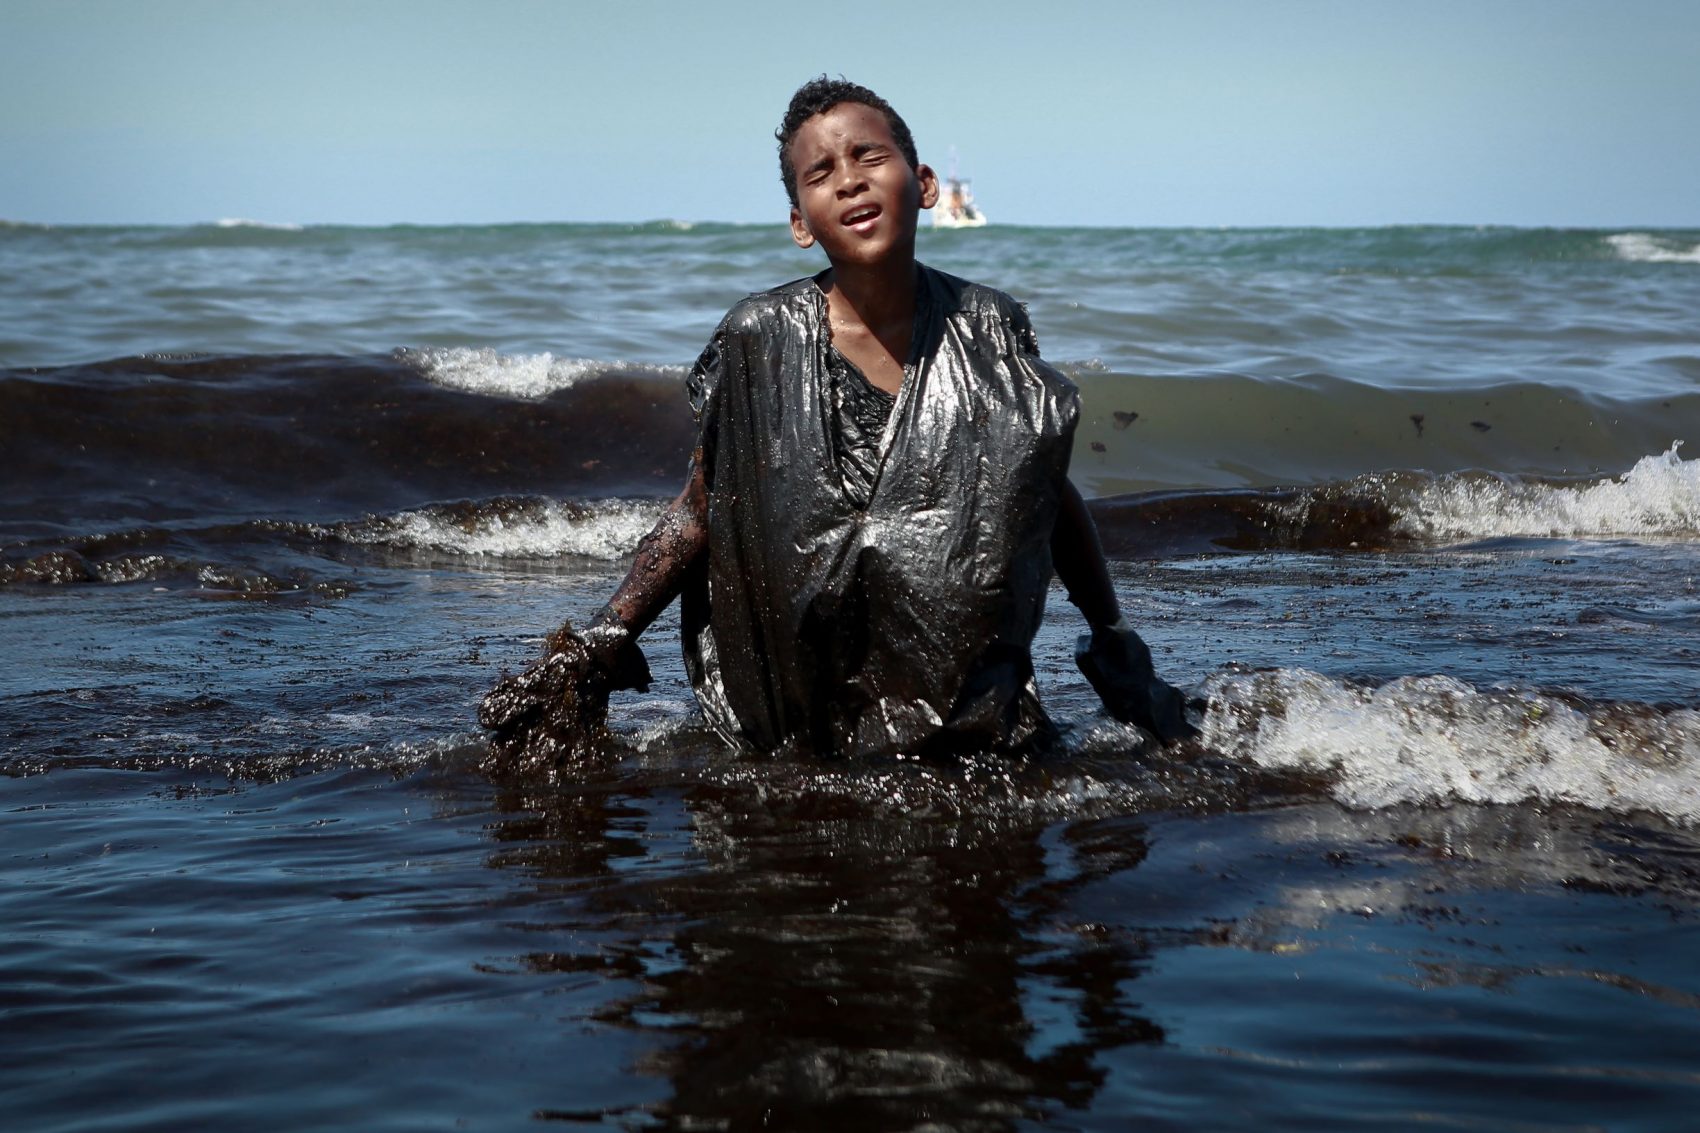 Voluntário no trabalho de limpeza das praias em Cabo de Santo Agostinho (PE), adolescente sai do mar coberto de óleo: 200 localidades atingidas em todo o Nordeste (Foto: Leo Malafaia/AFP)